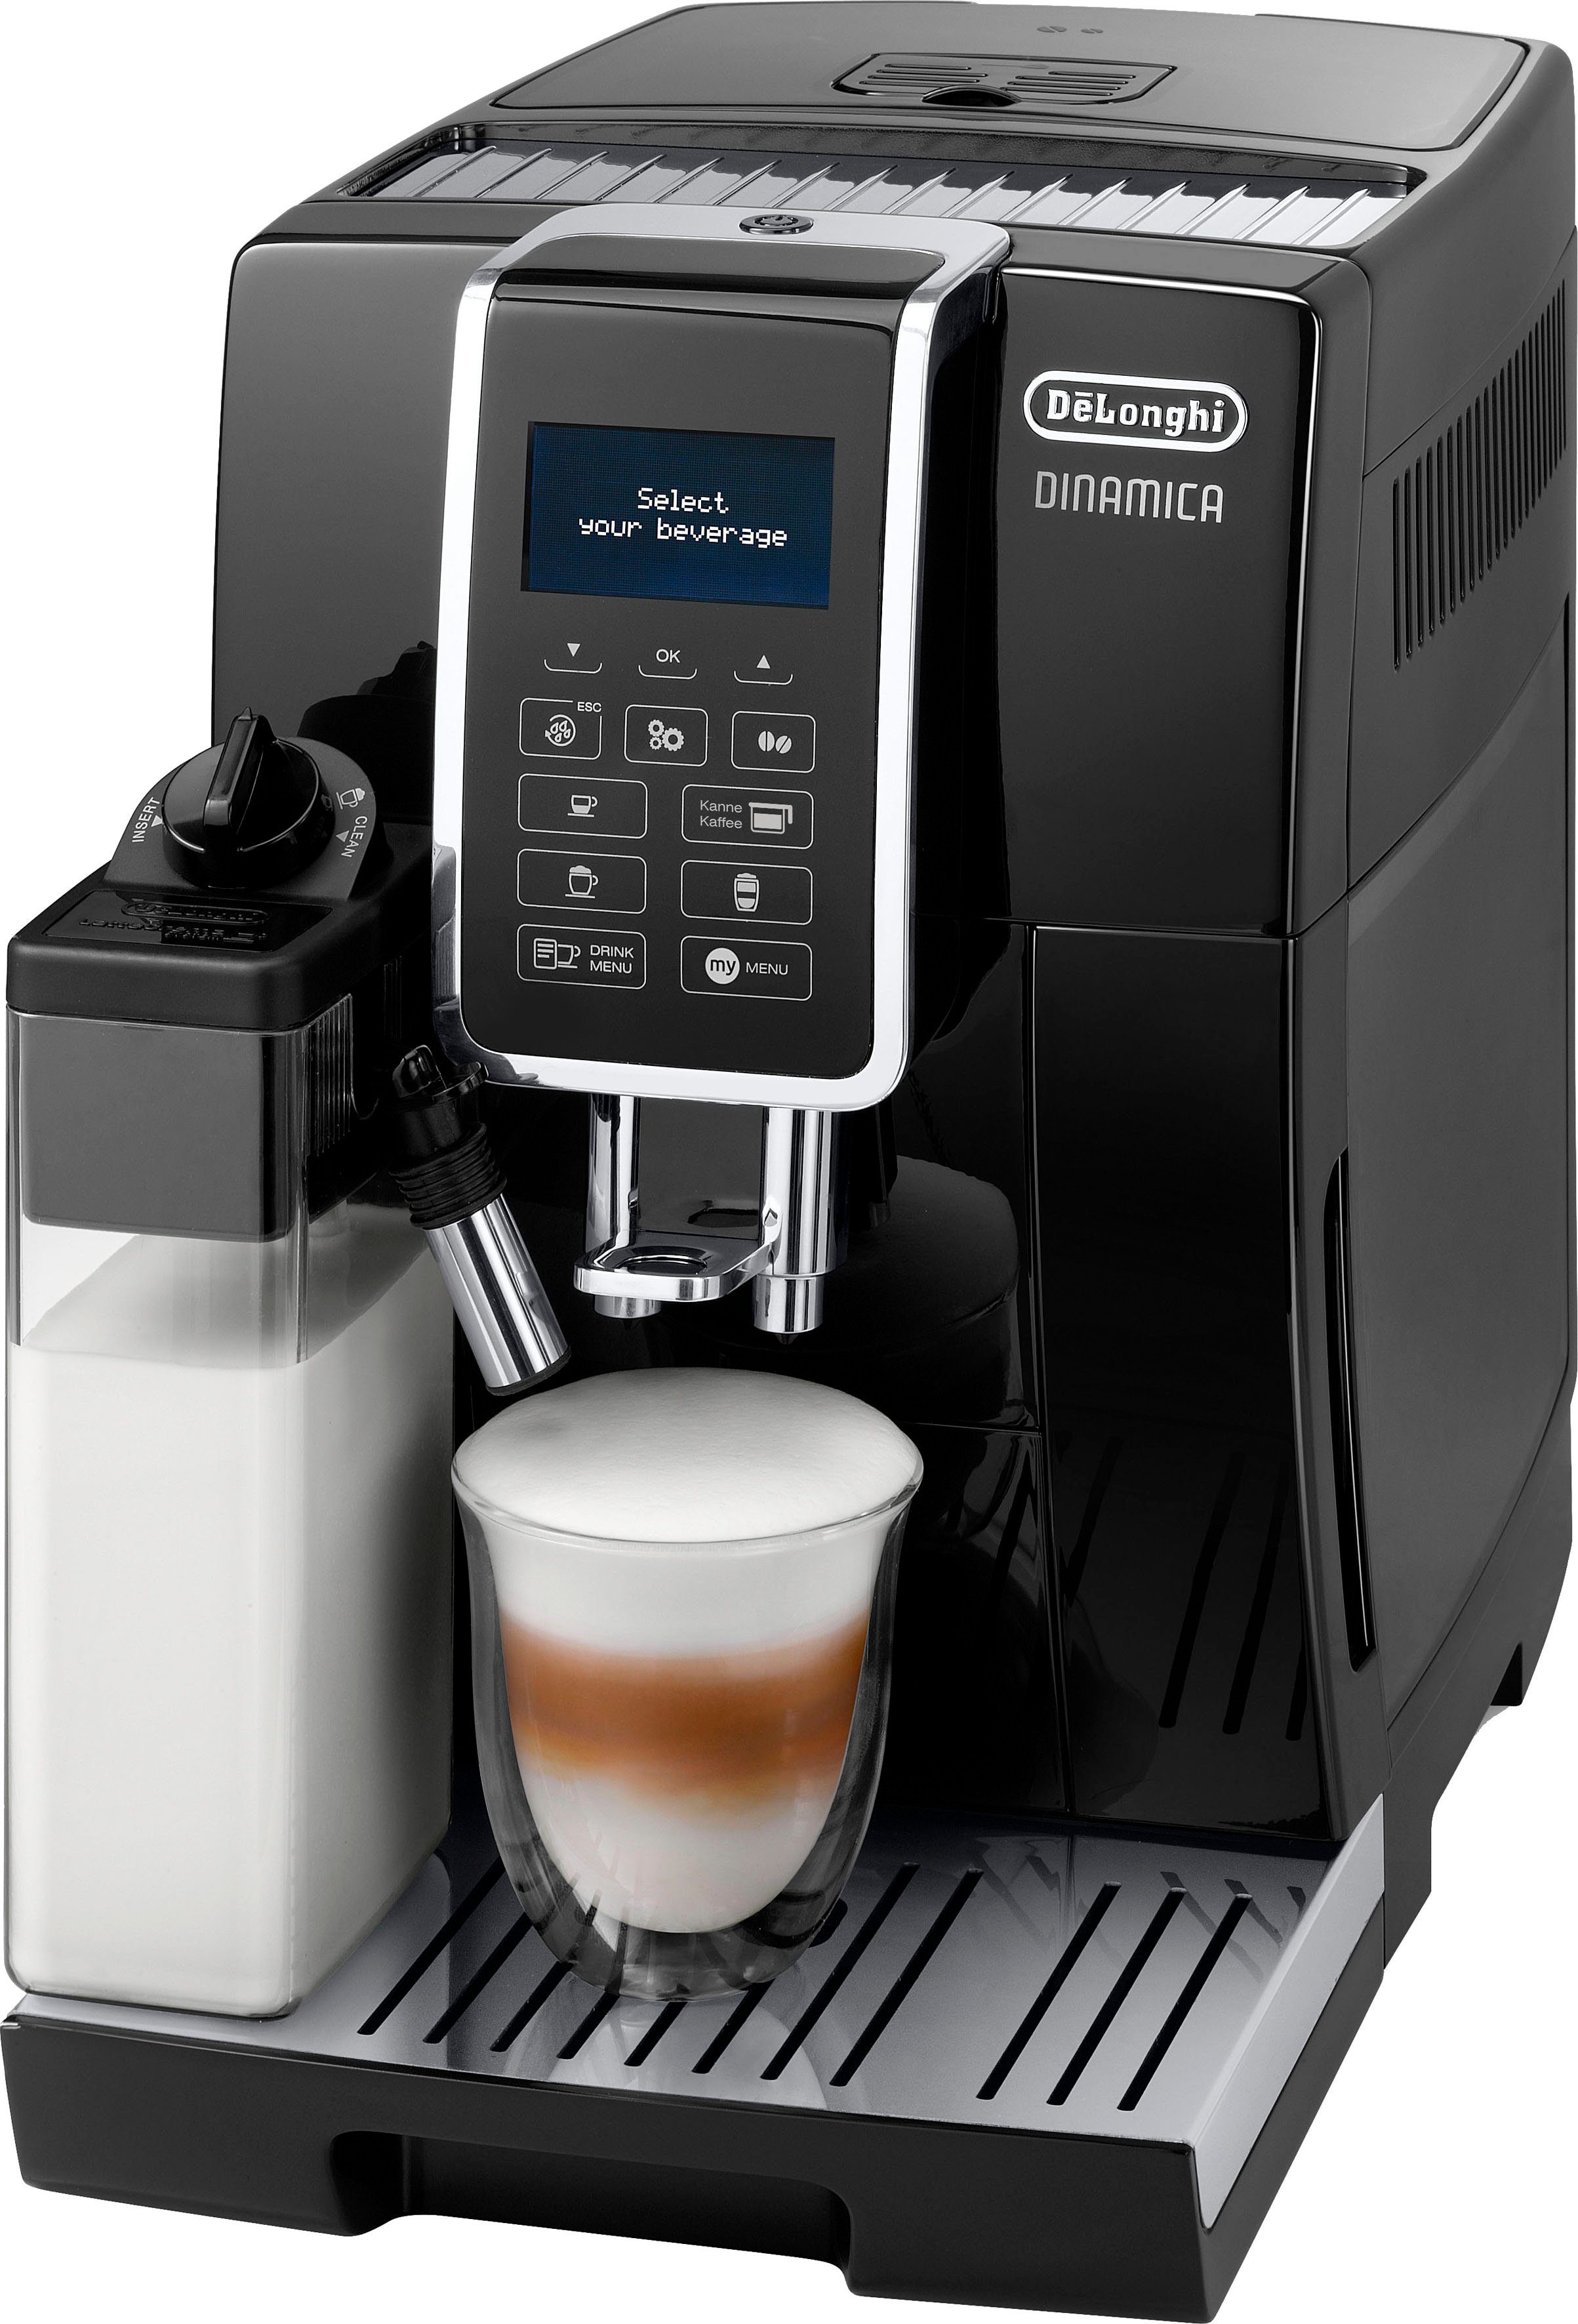 De'Longhi Volautomatisch koffiezetapparaat Dinamica ECAM 356.57.B, met 4 snelkeuzetoetsen, koffiekanfunctie